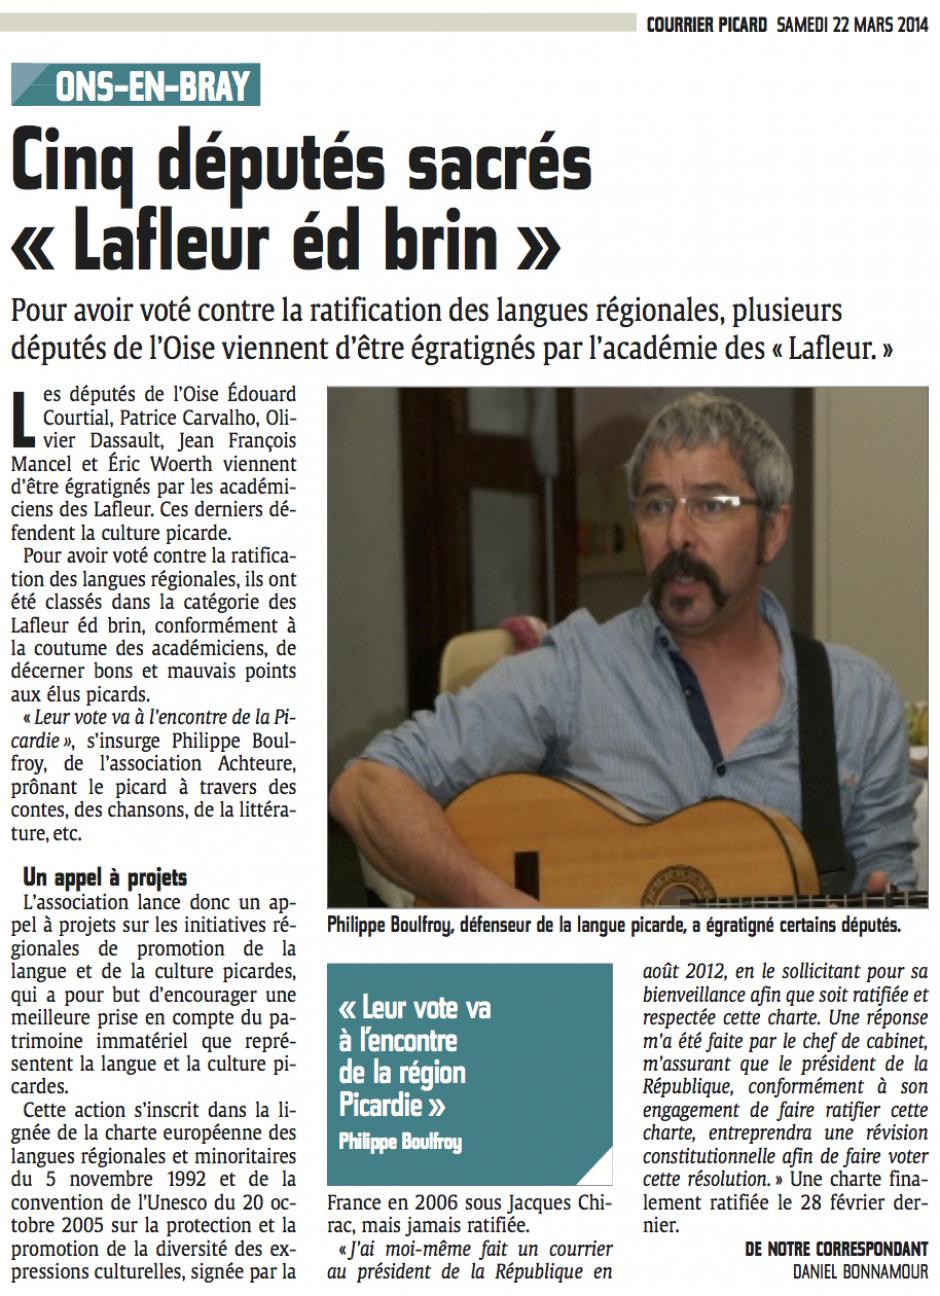 20140322-CP-Ons-en-Bray-Cinq députés sacrés « Lafleur éd brin »